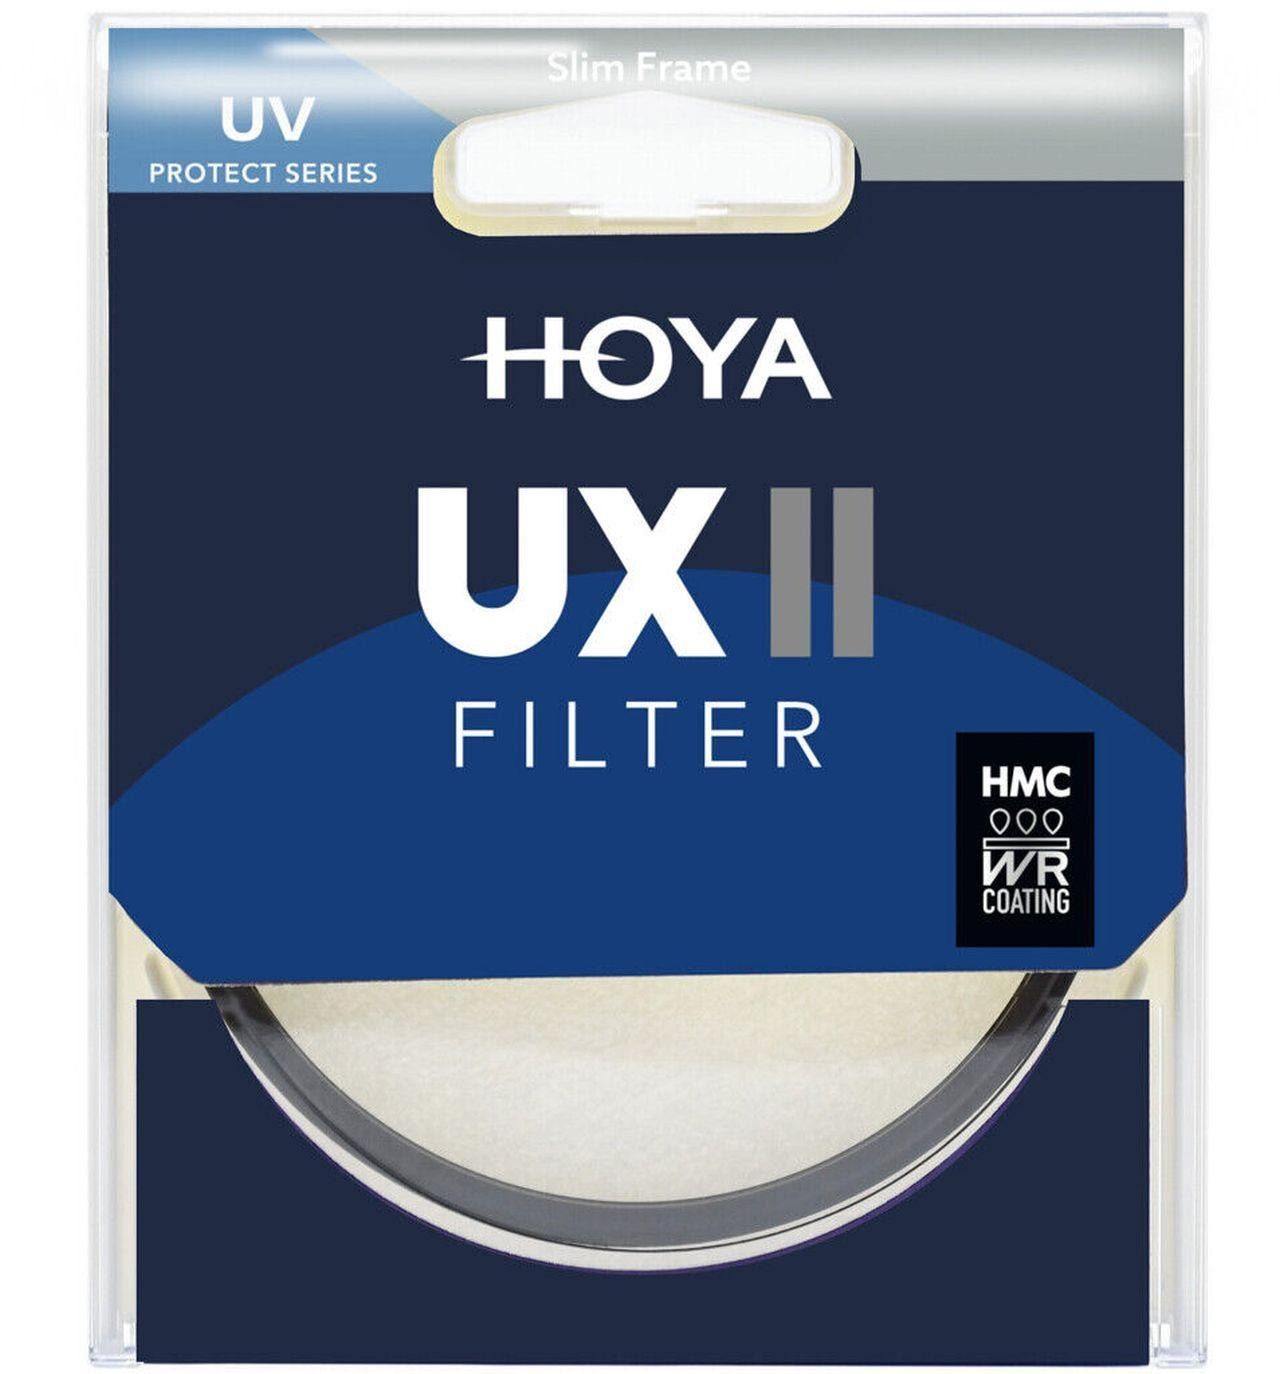 Hoya UX II UV-Filter 67mm Objektivzubehör